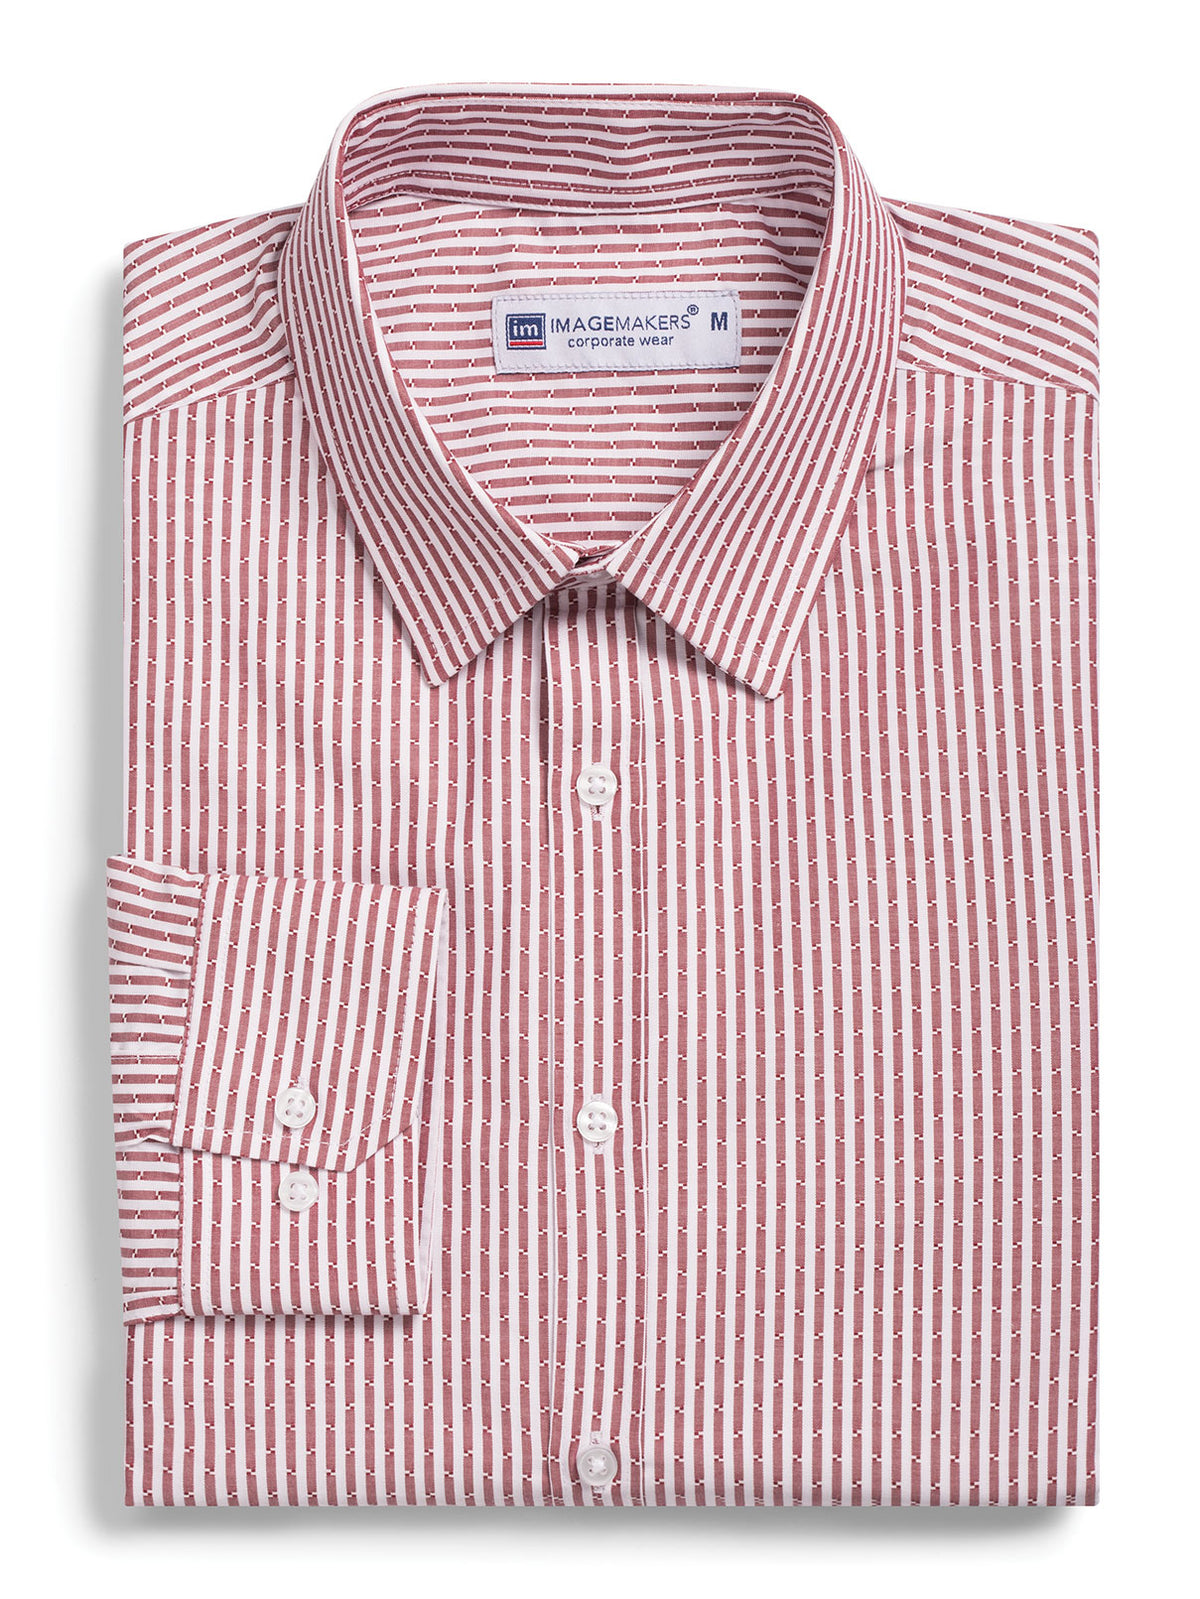 Stuart cotton shirt - red stripe